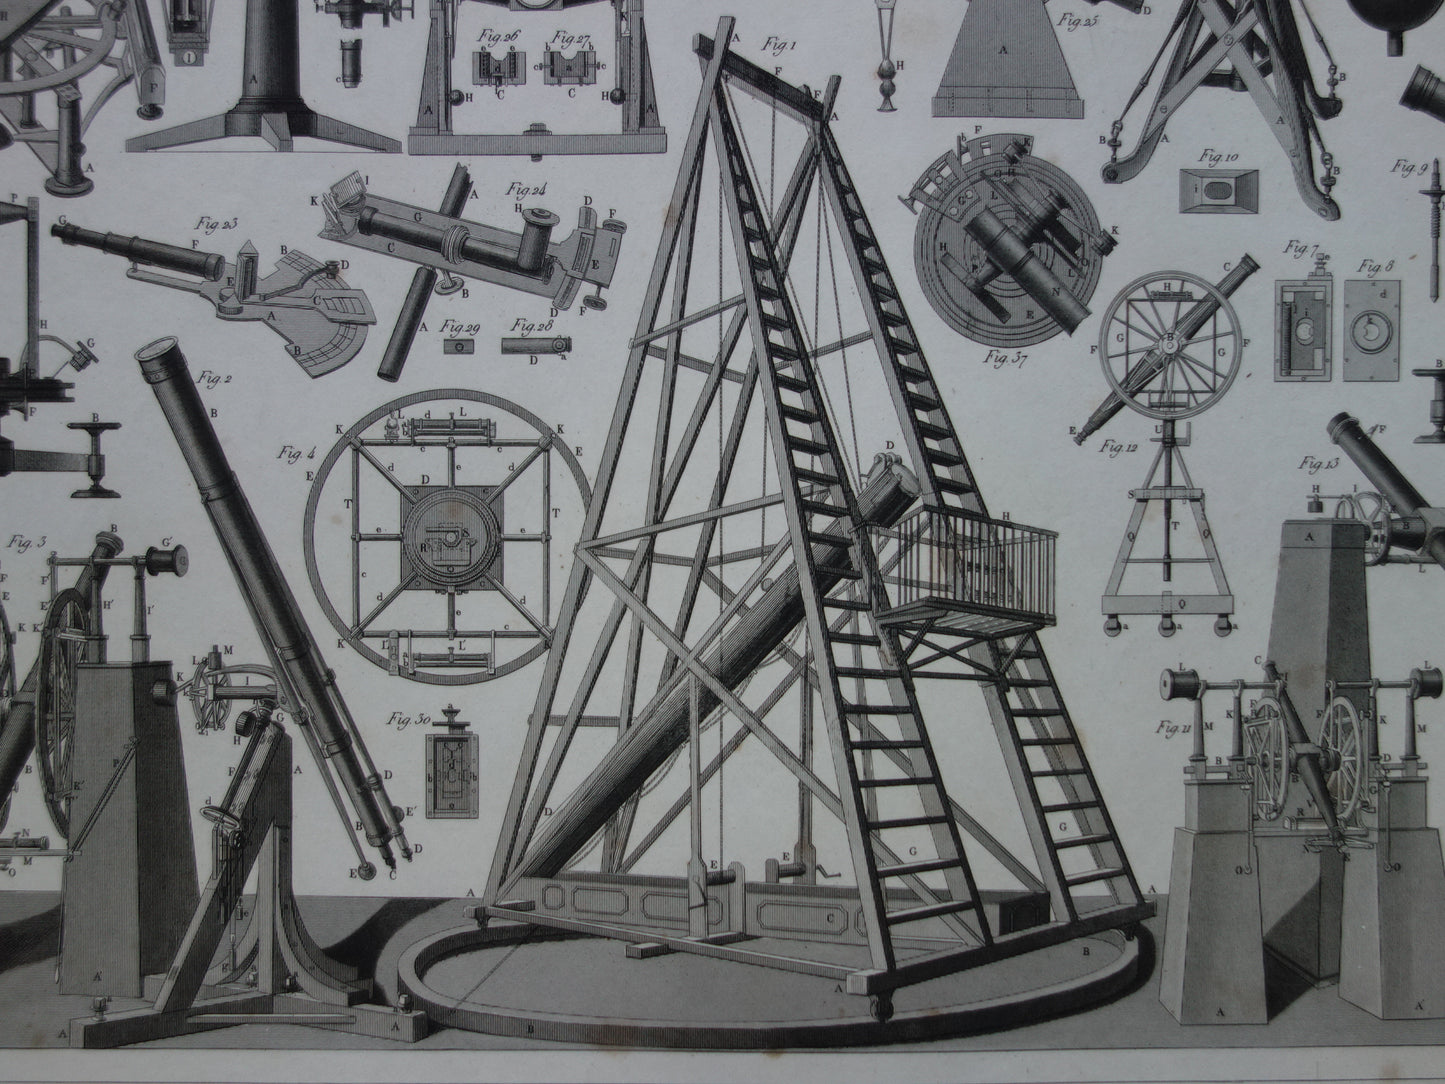 TELESCOPEN oude astronomie prent - 1849 originele antieke telescoop print - vintage astronomische illustratie